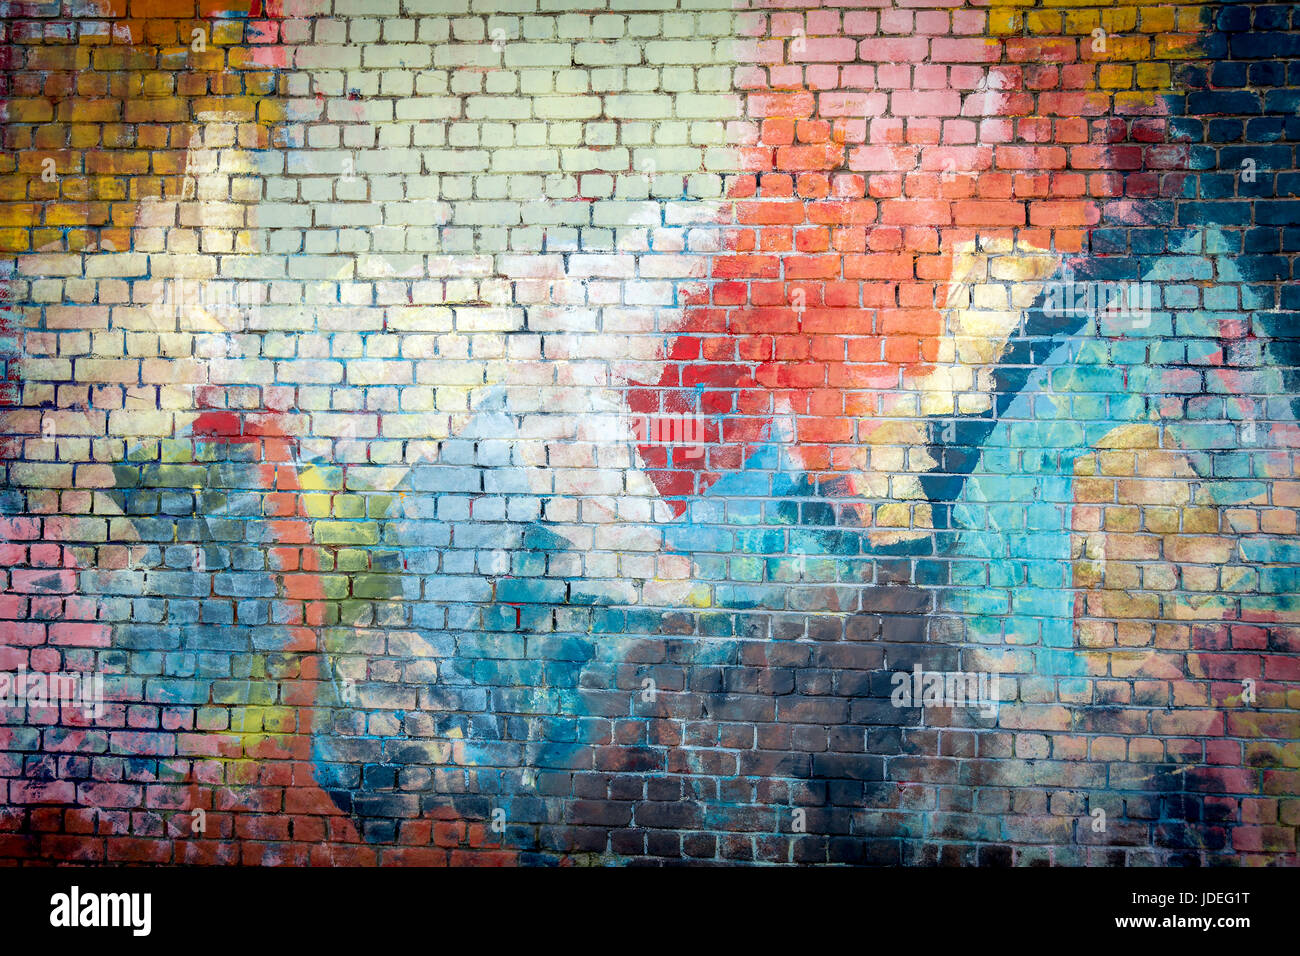 Multi coloured graffiti painted brick wall background Stock Photo - Alamy